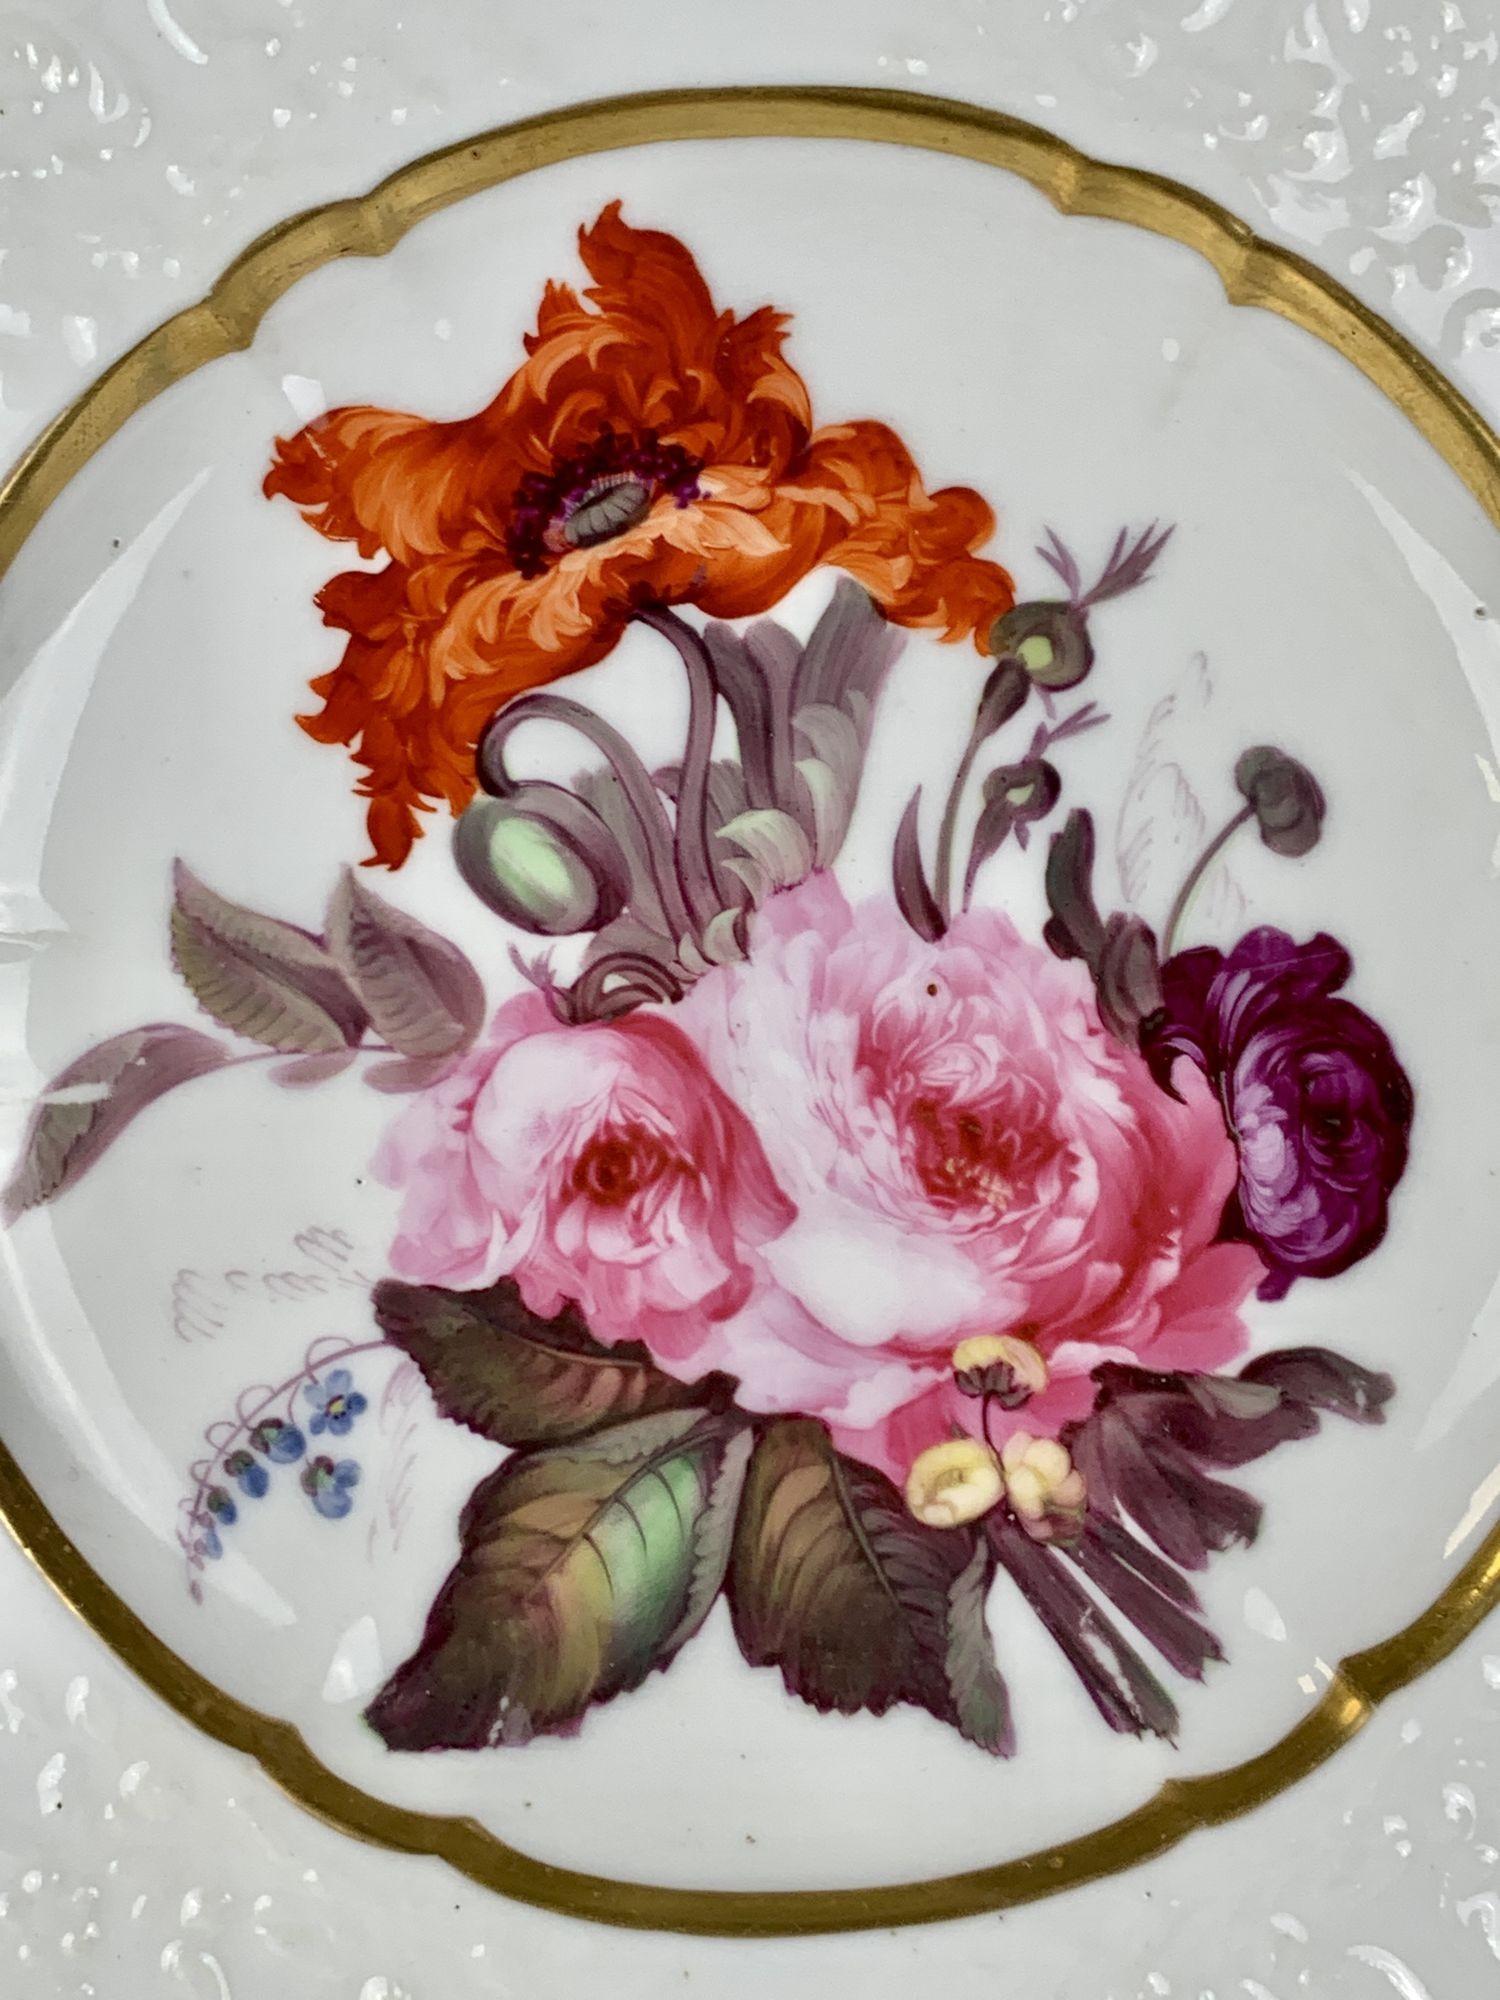 Le plat est peint à la main avec des roses roses et violettes parfaites et un fabuleux coquelicot oriental orange.
Le centre est entouré d'une bande dorée. 
La bordure est ornée d'un décor imprimé de fleurs et de vignes enroulées.
Il s'agit d'une